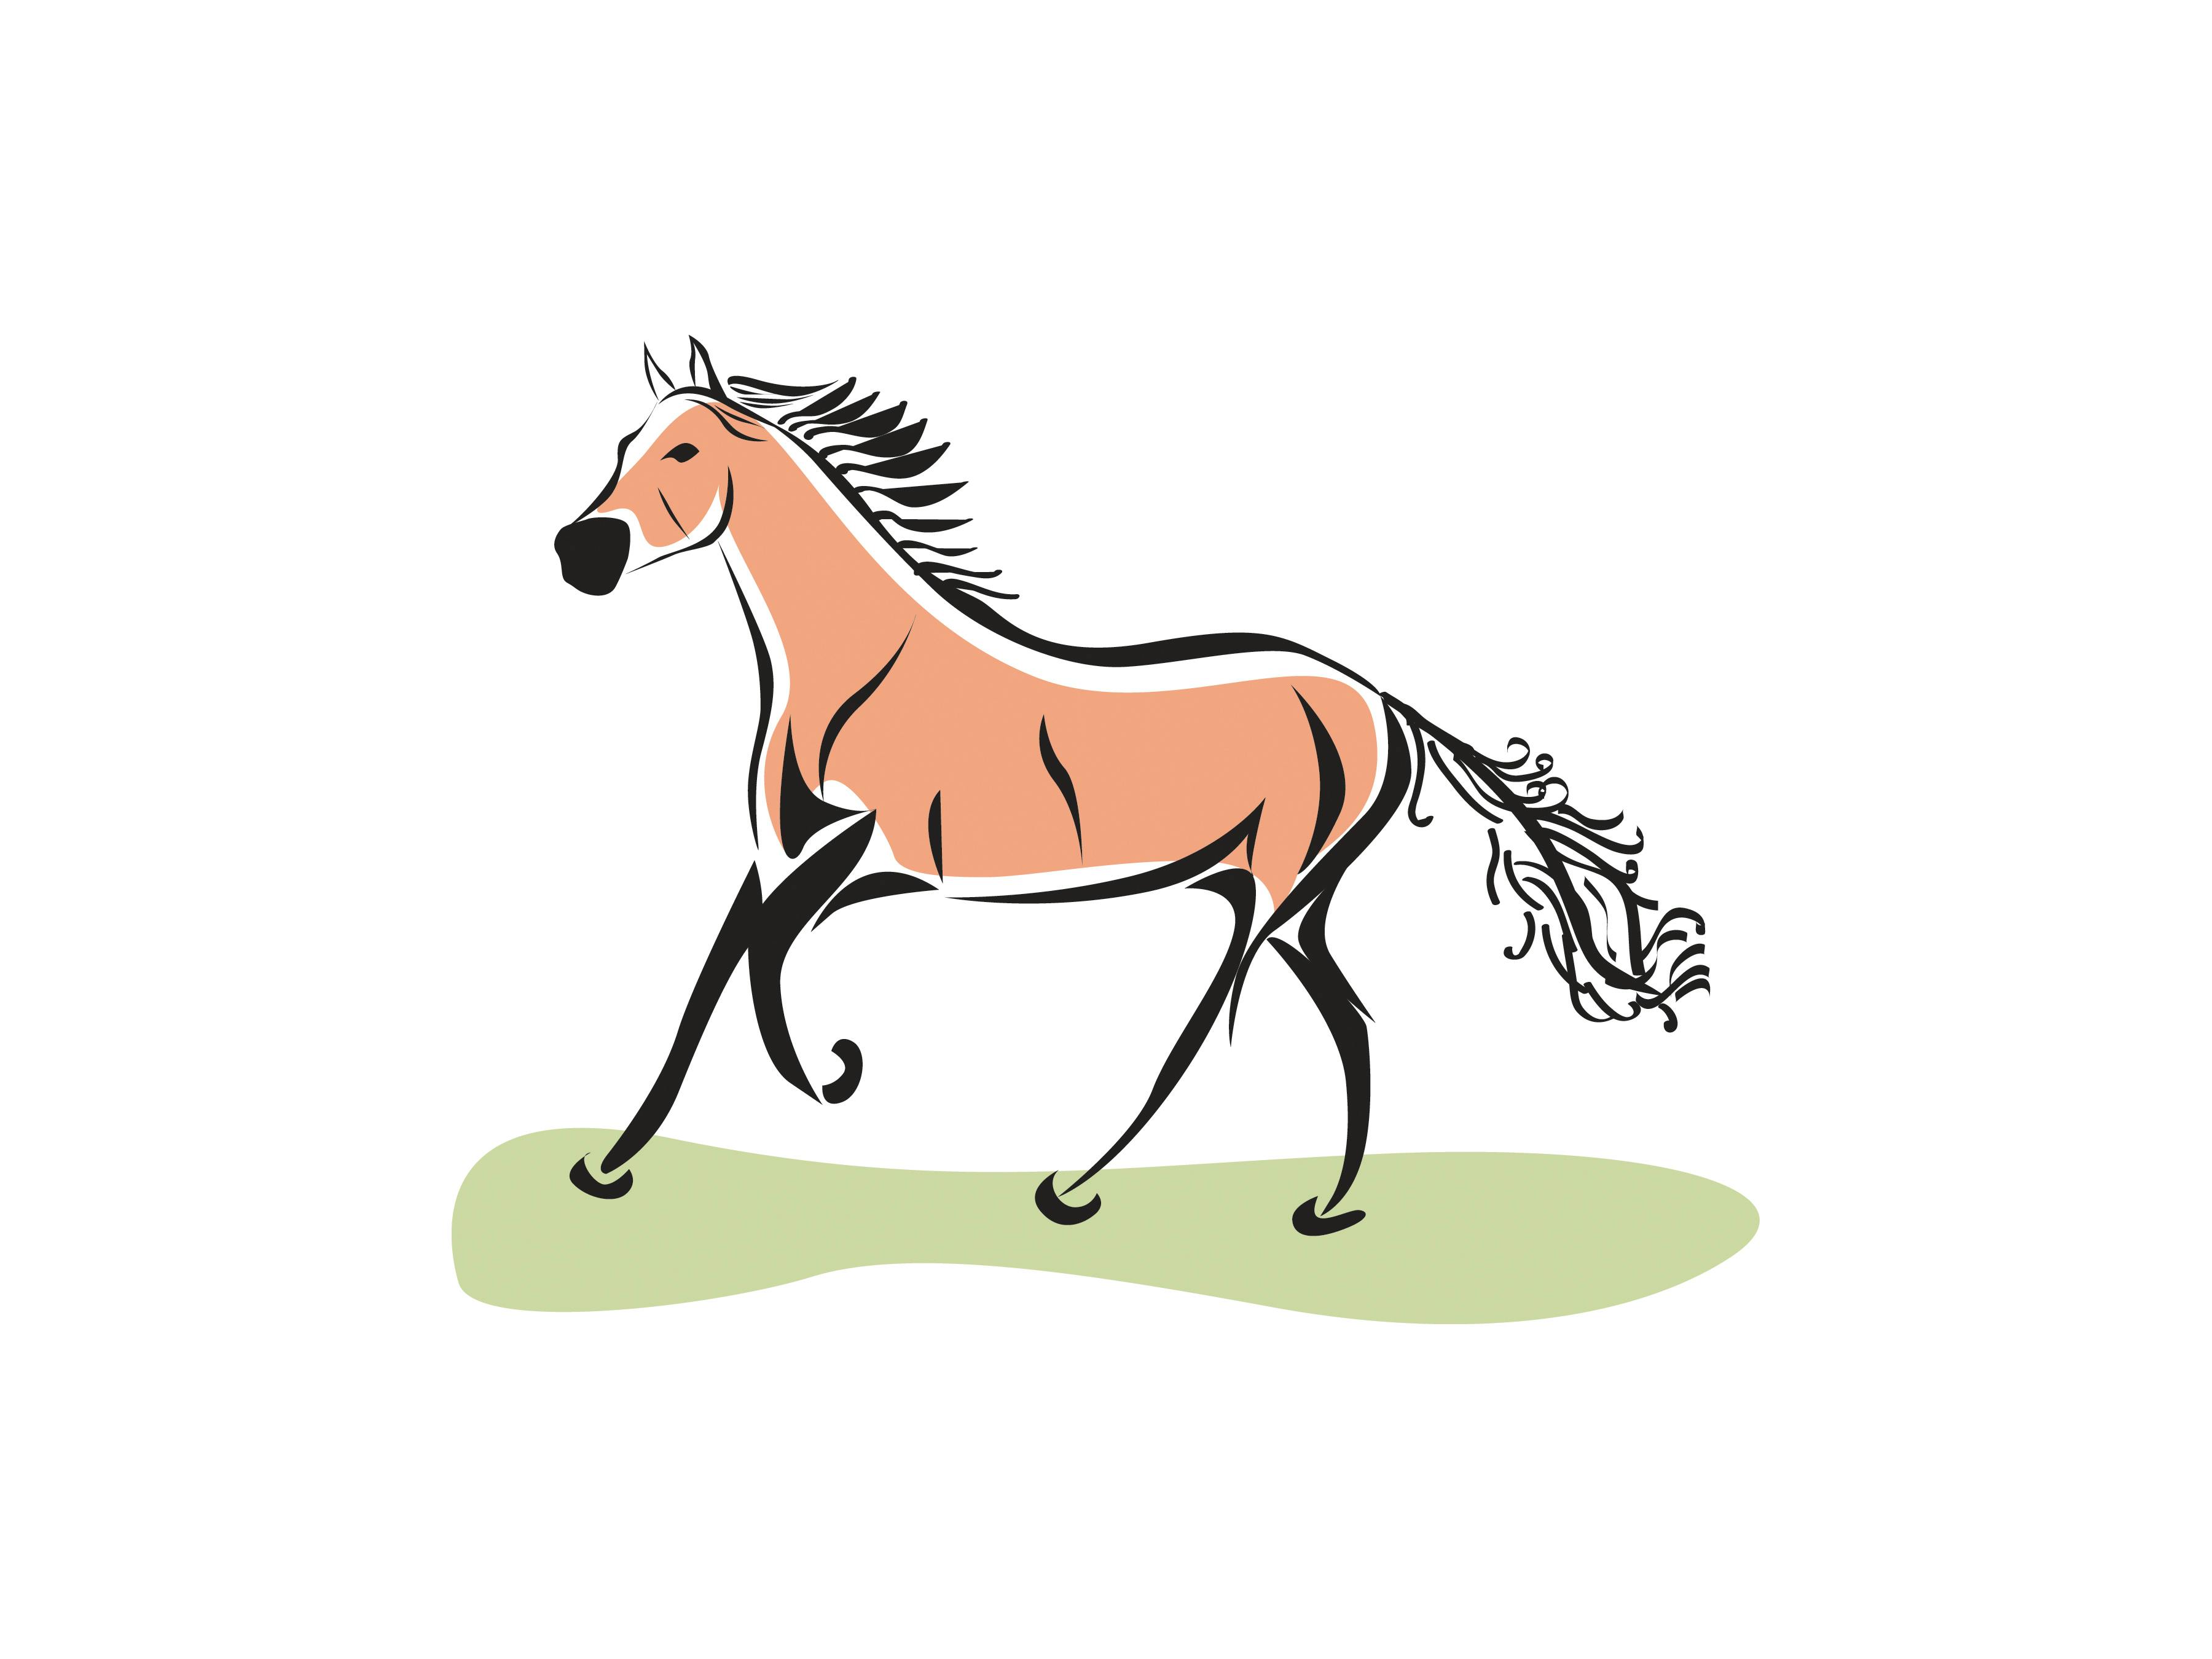 Free stock photo of Horse illustration